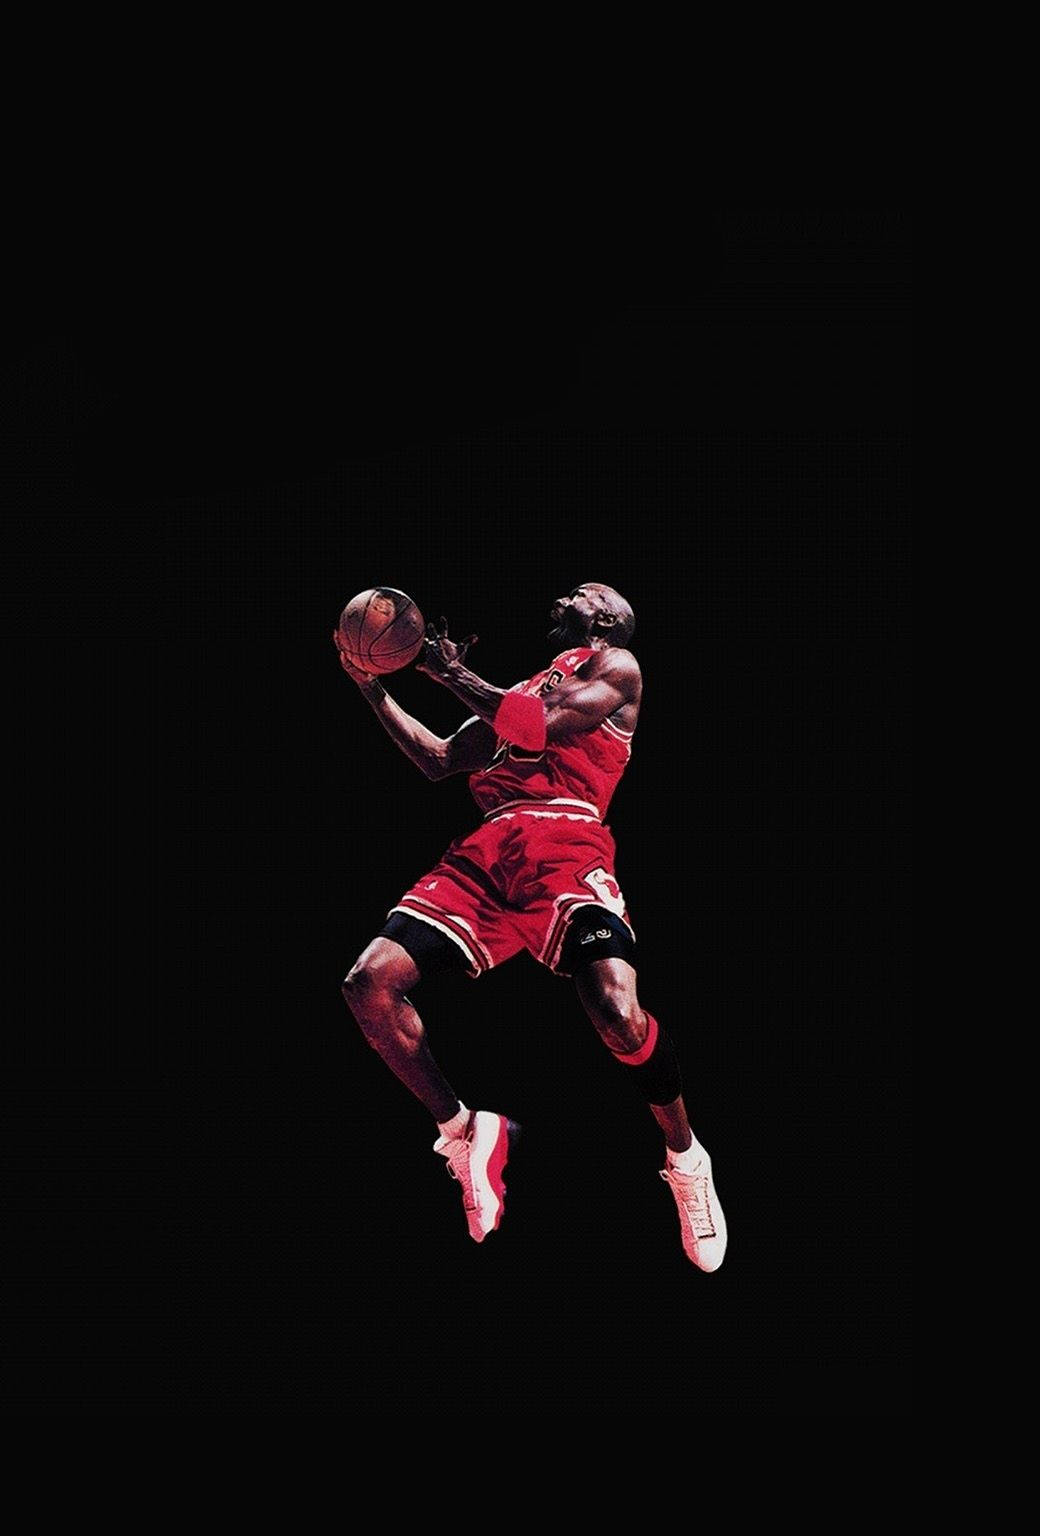 Cool Nike Michael Jordan Poster